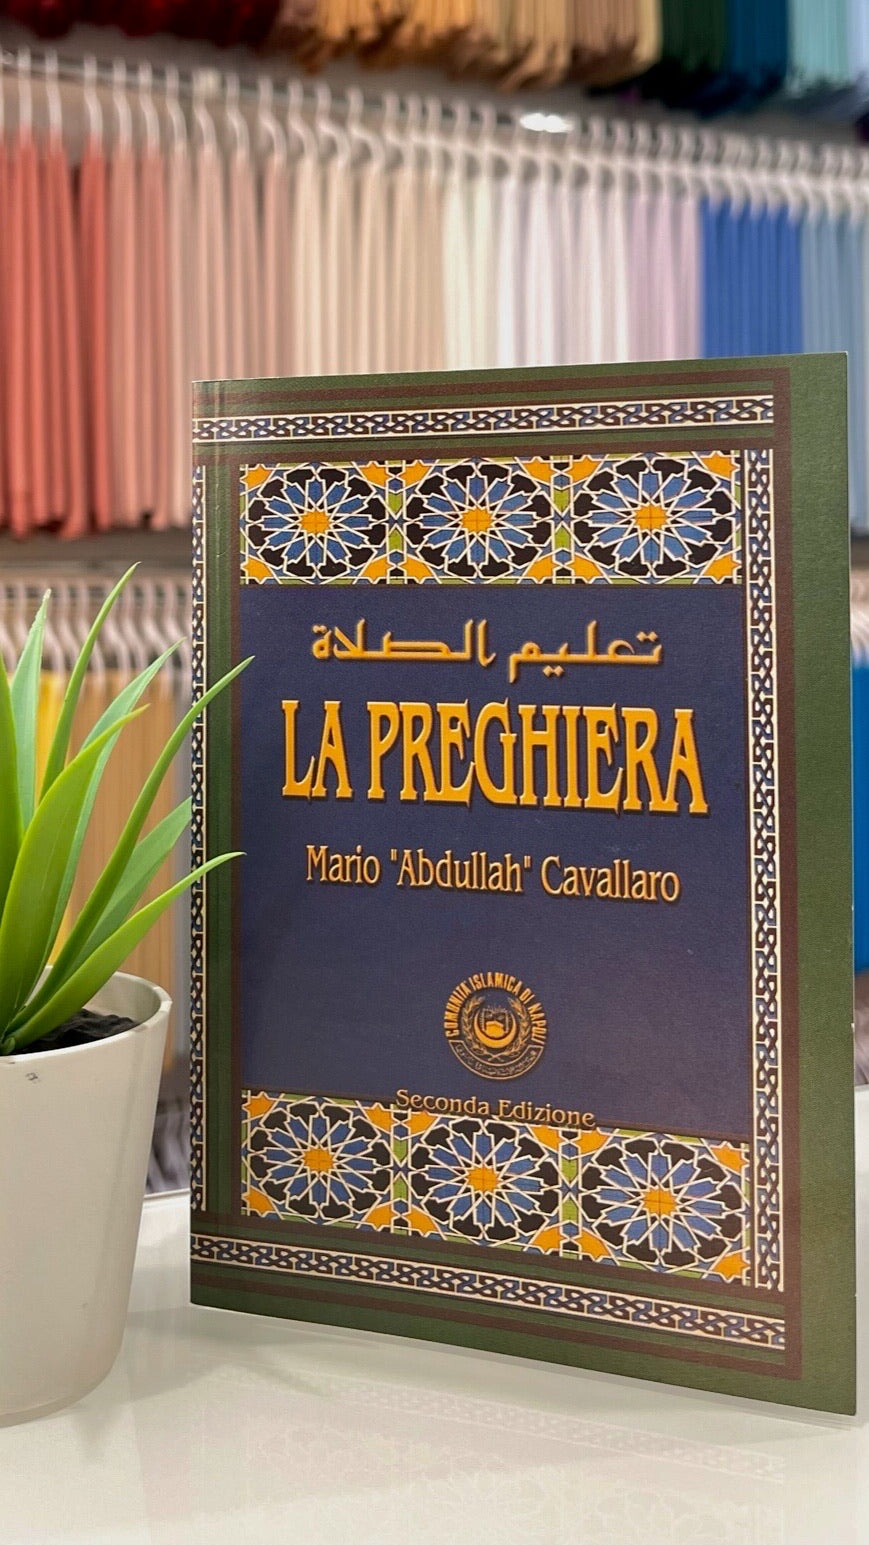 La preghiera - guida illustrata - Hijab Paradise   - imparare a pregare - come bisogna pregare - impara a pregare  - libro